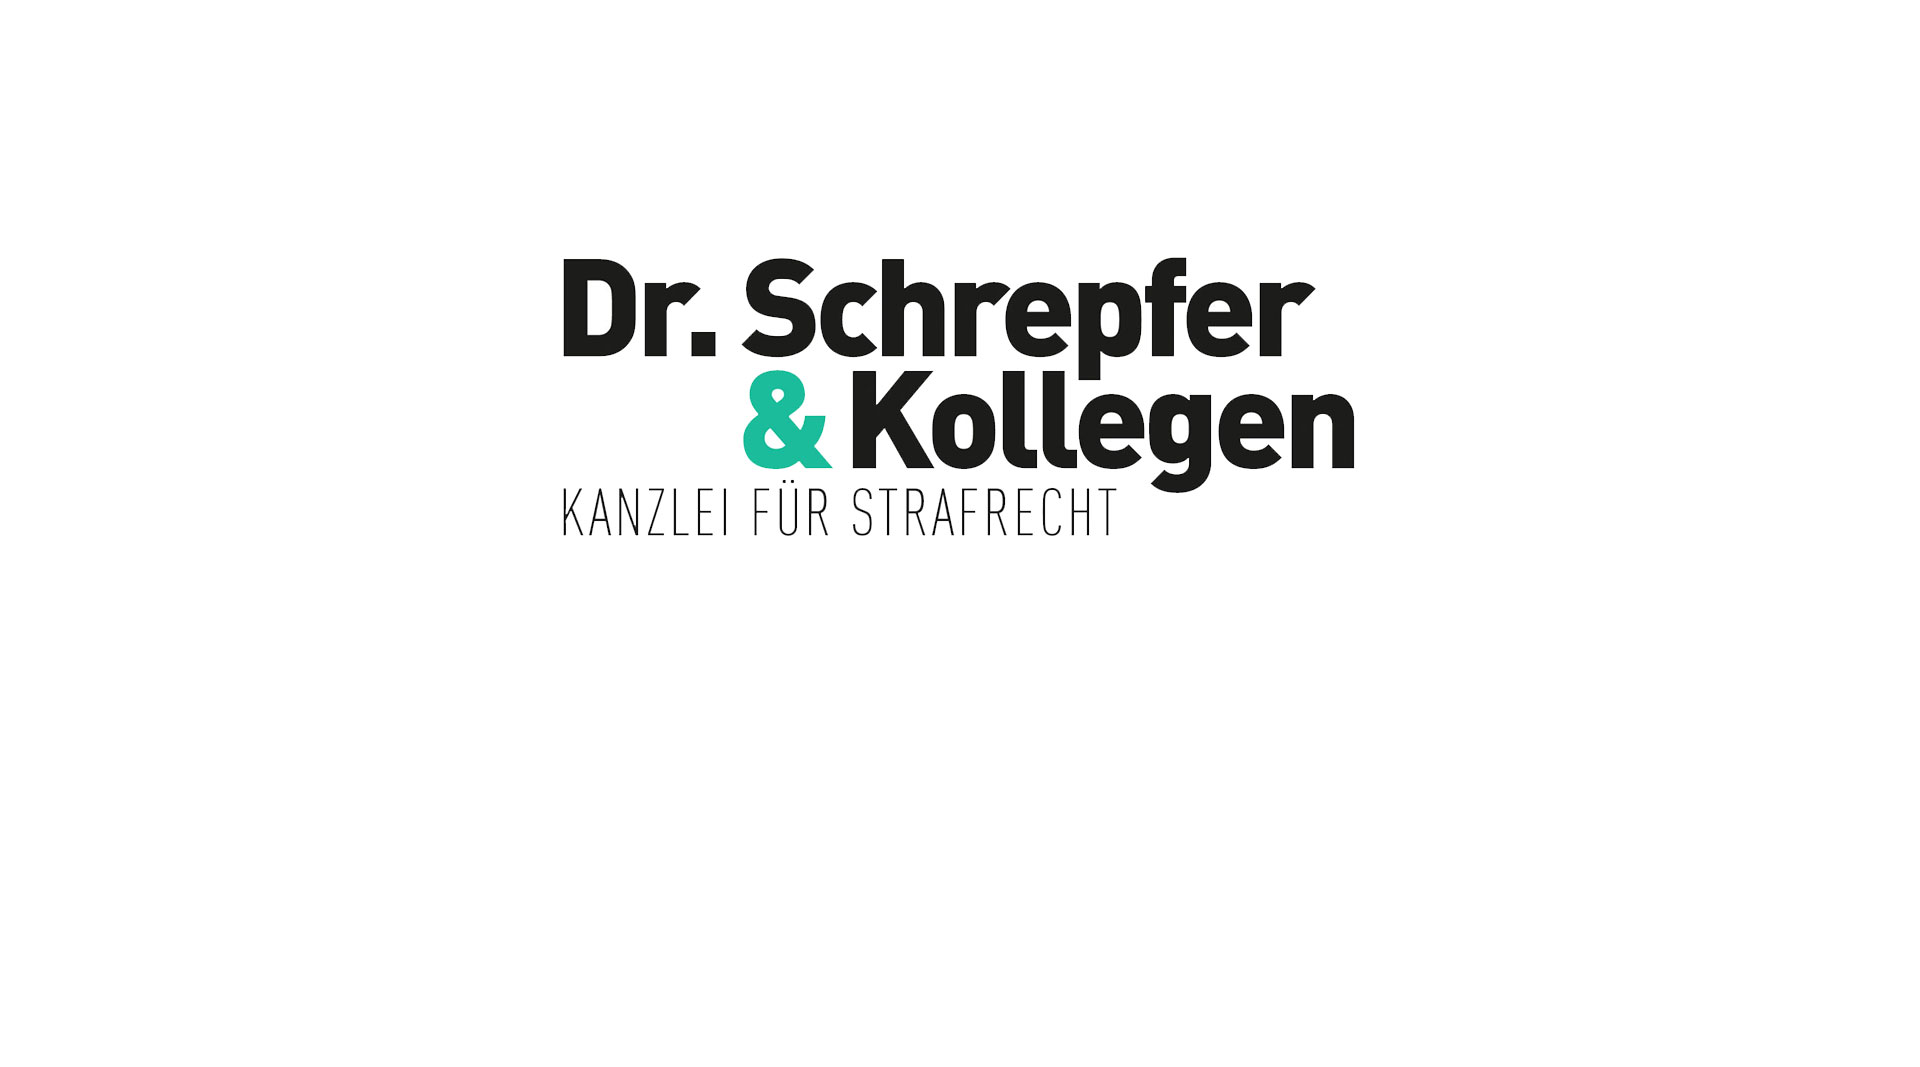 Dr. Schrepfer & Kollegen Kanzlei für Strafrecht